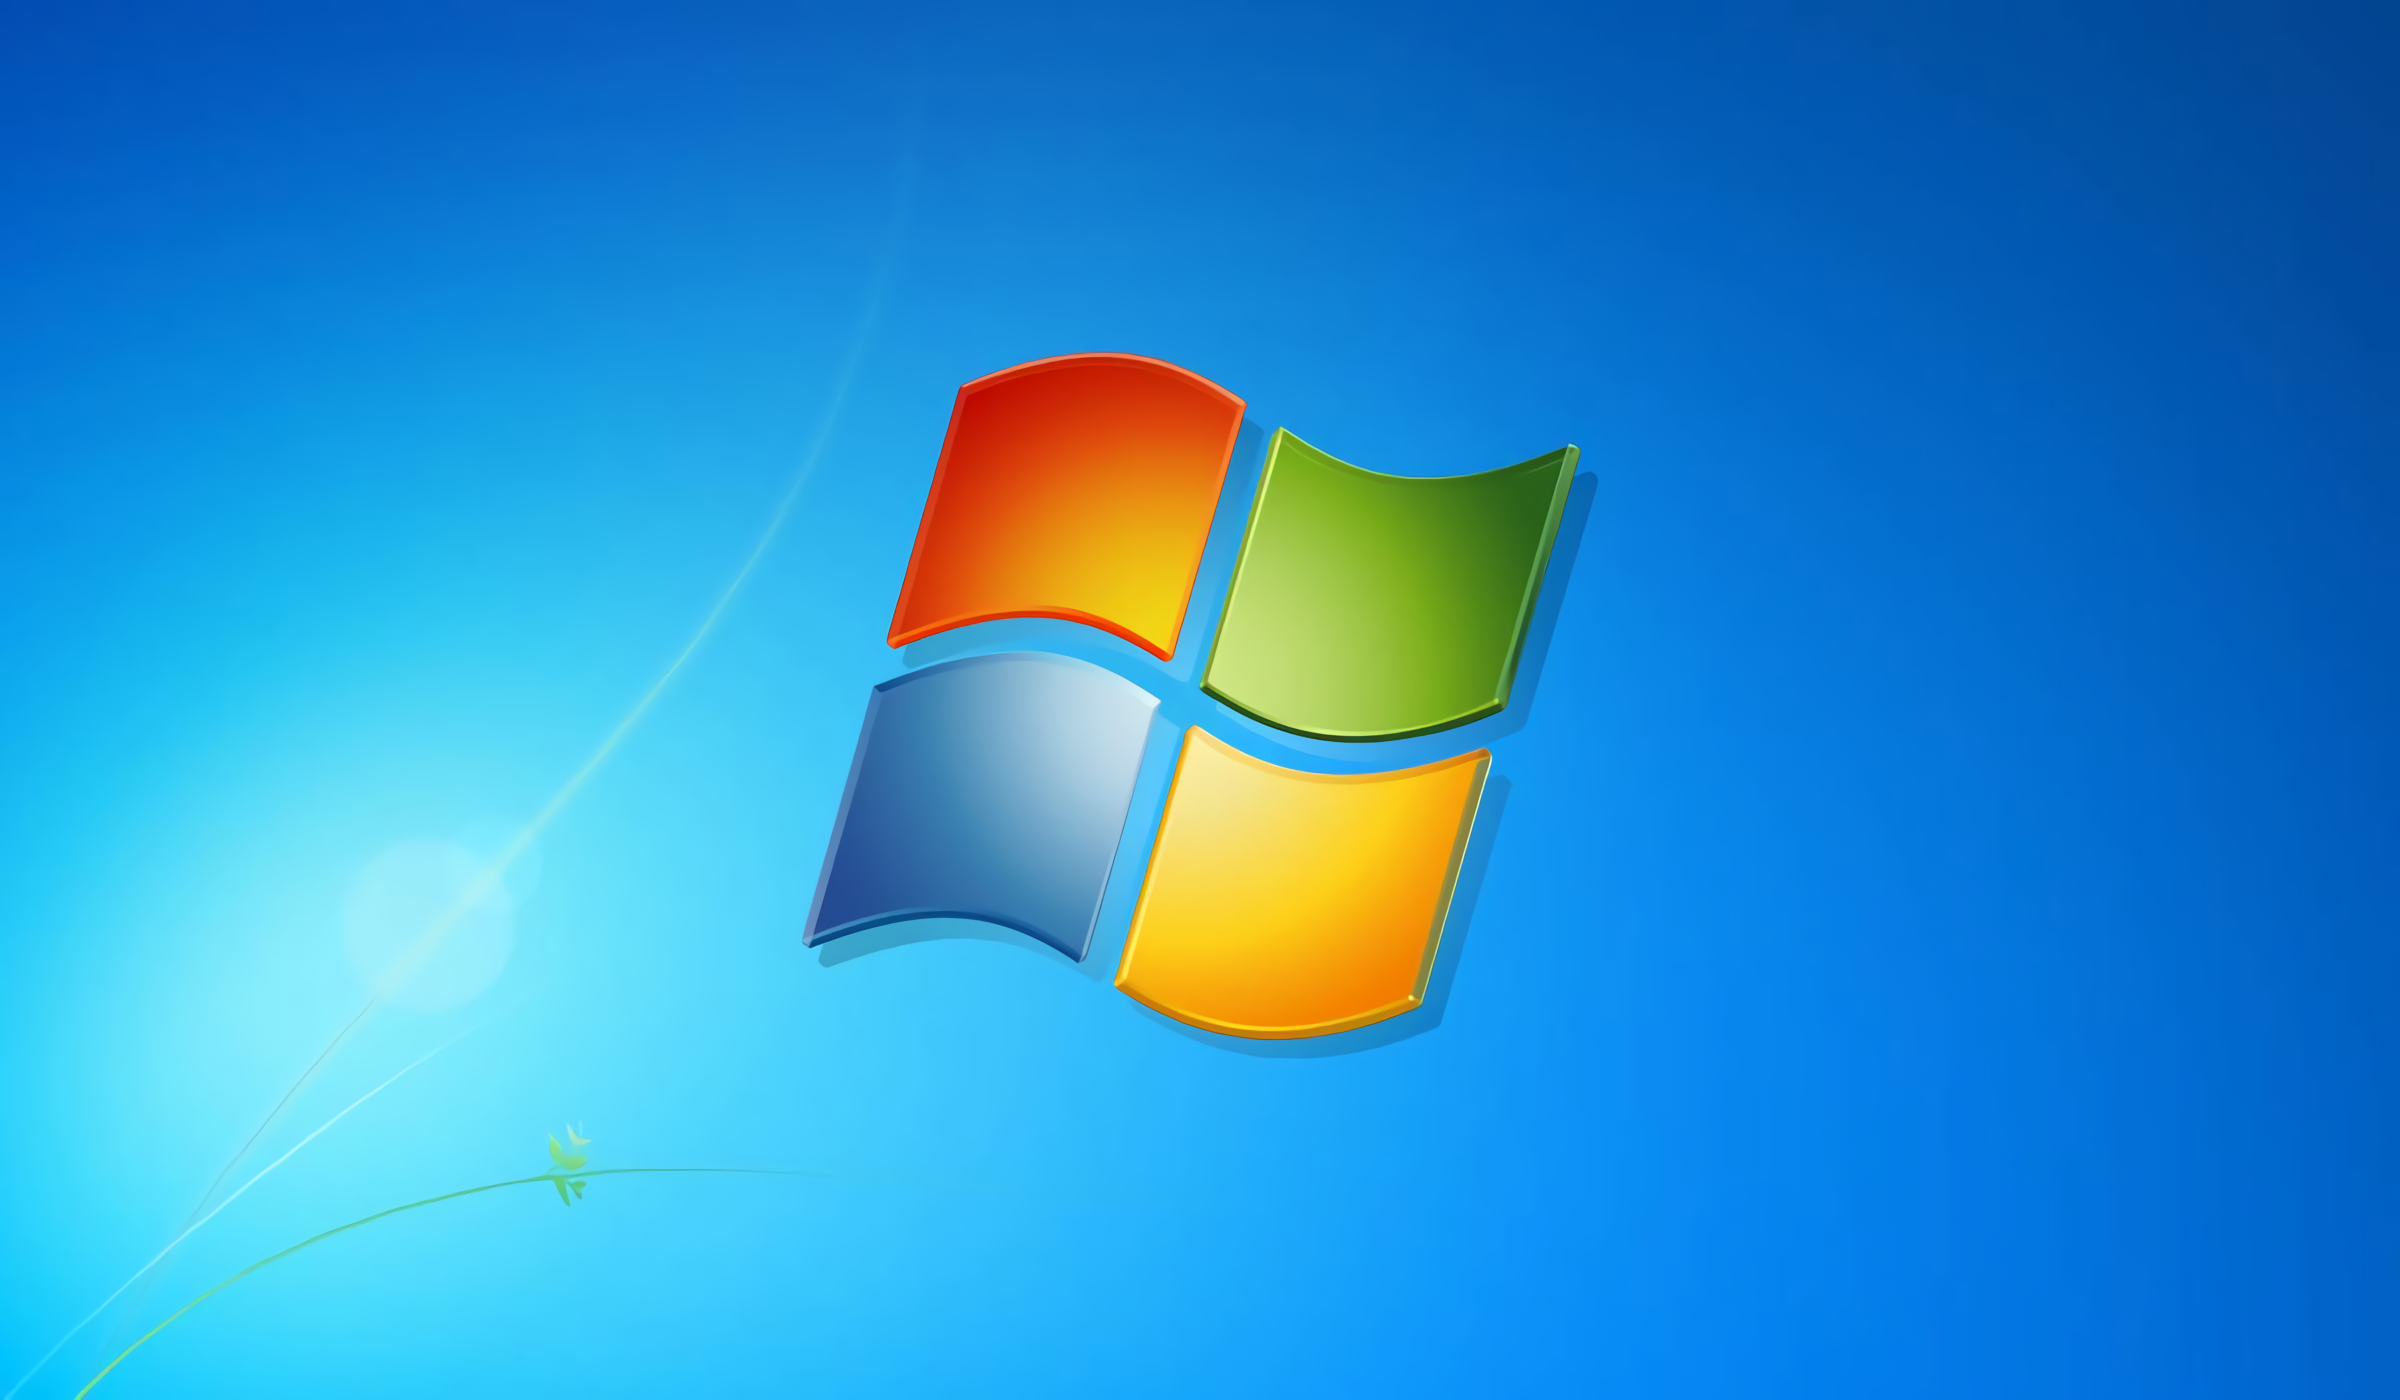 Windows 7 ya no tendrá soporte de seguridad al igual que Windows 8 desde enero de 2023.